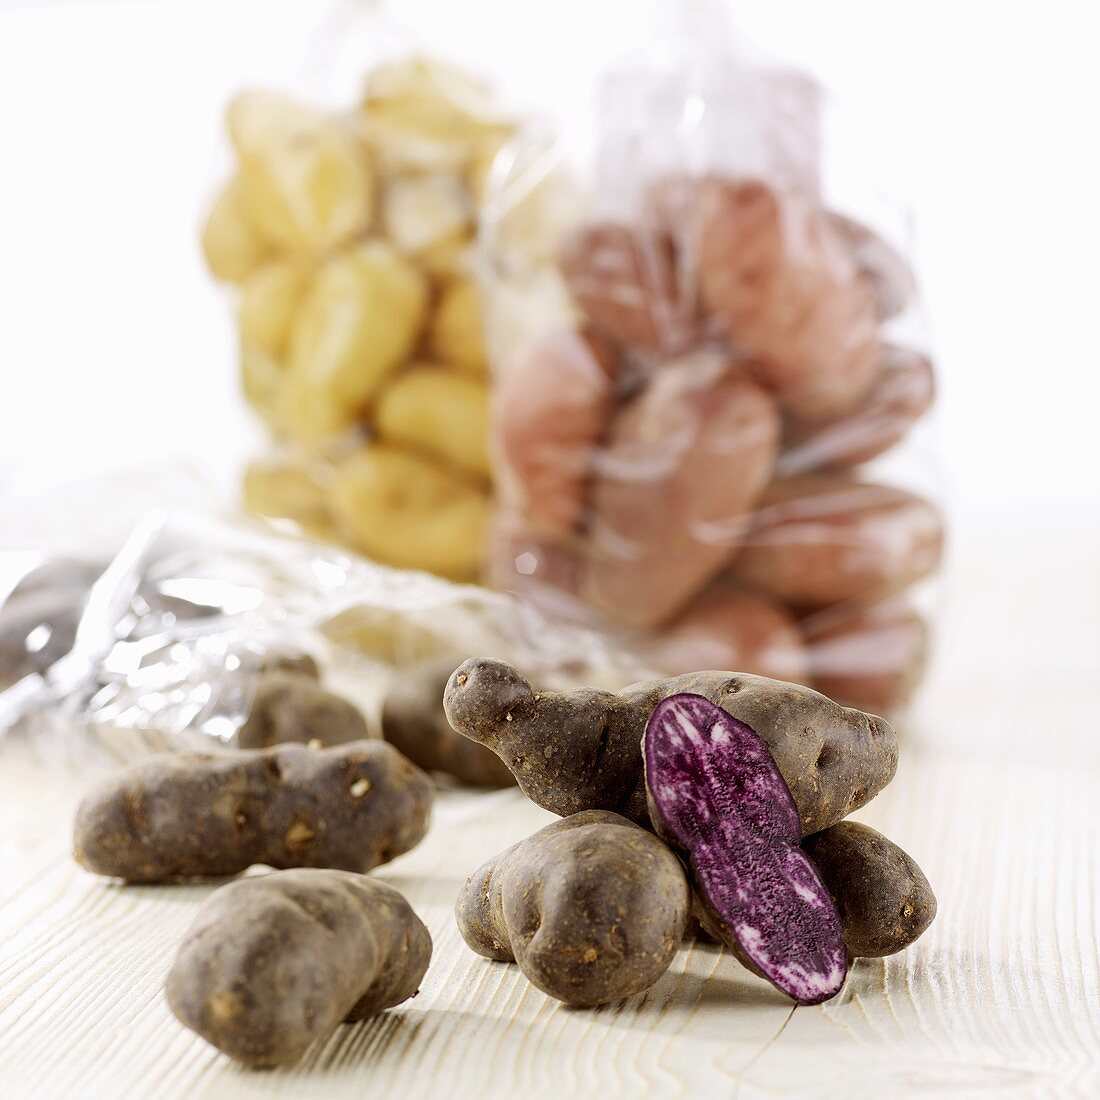 Violette Kartoffelsorte 'Vitelotte' & weitere Sorten